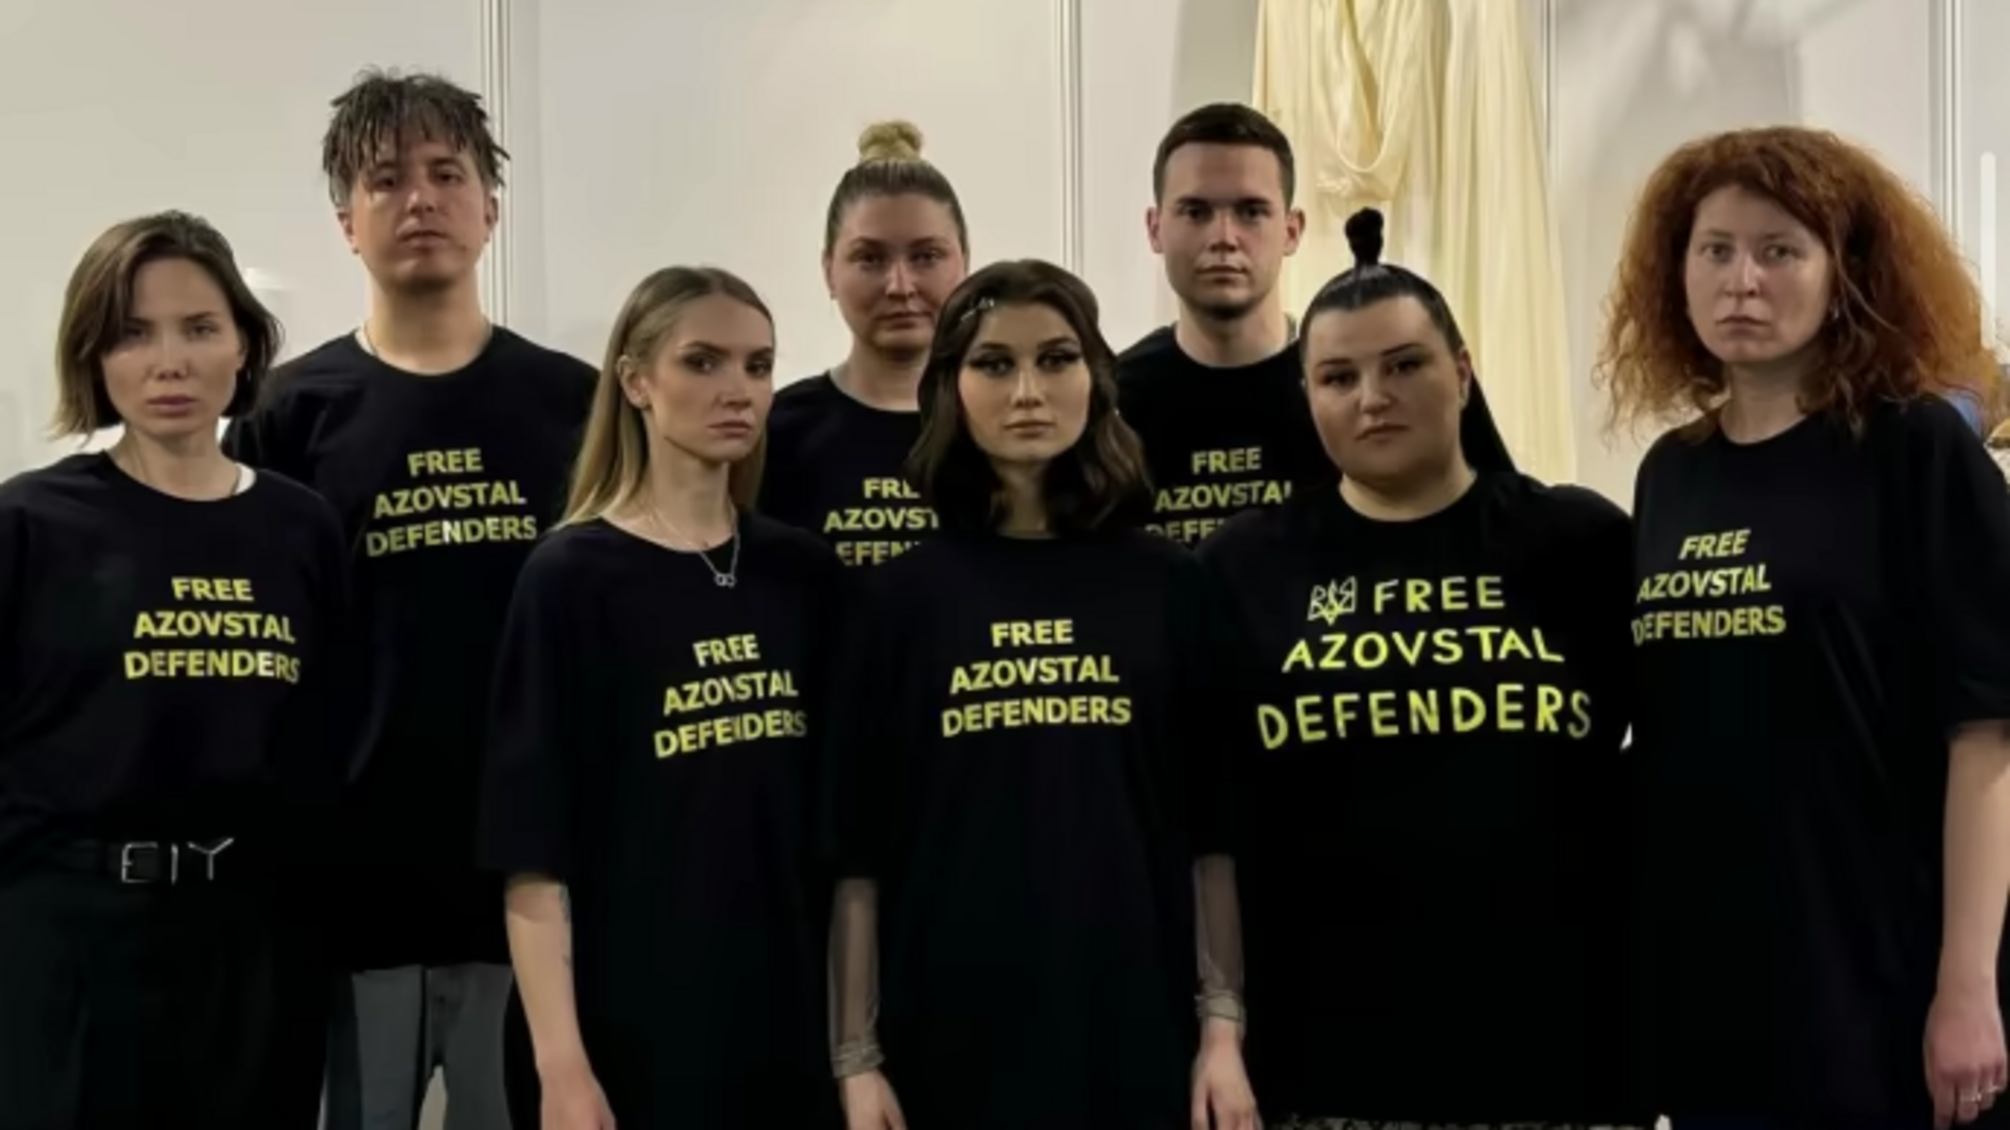 'Общественное вещание' опровергло заявление alyona alyona о штрах за футболки Free Azovstal Defenders на Евровидении